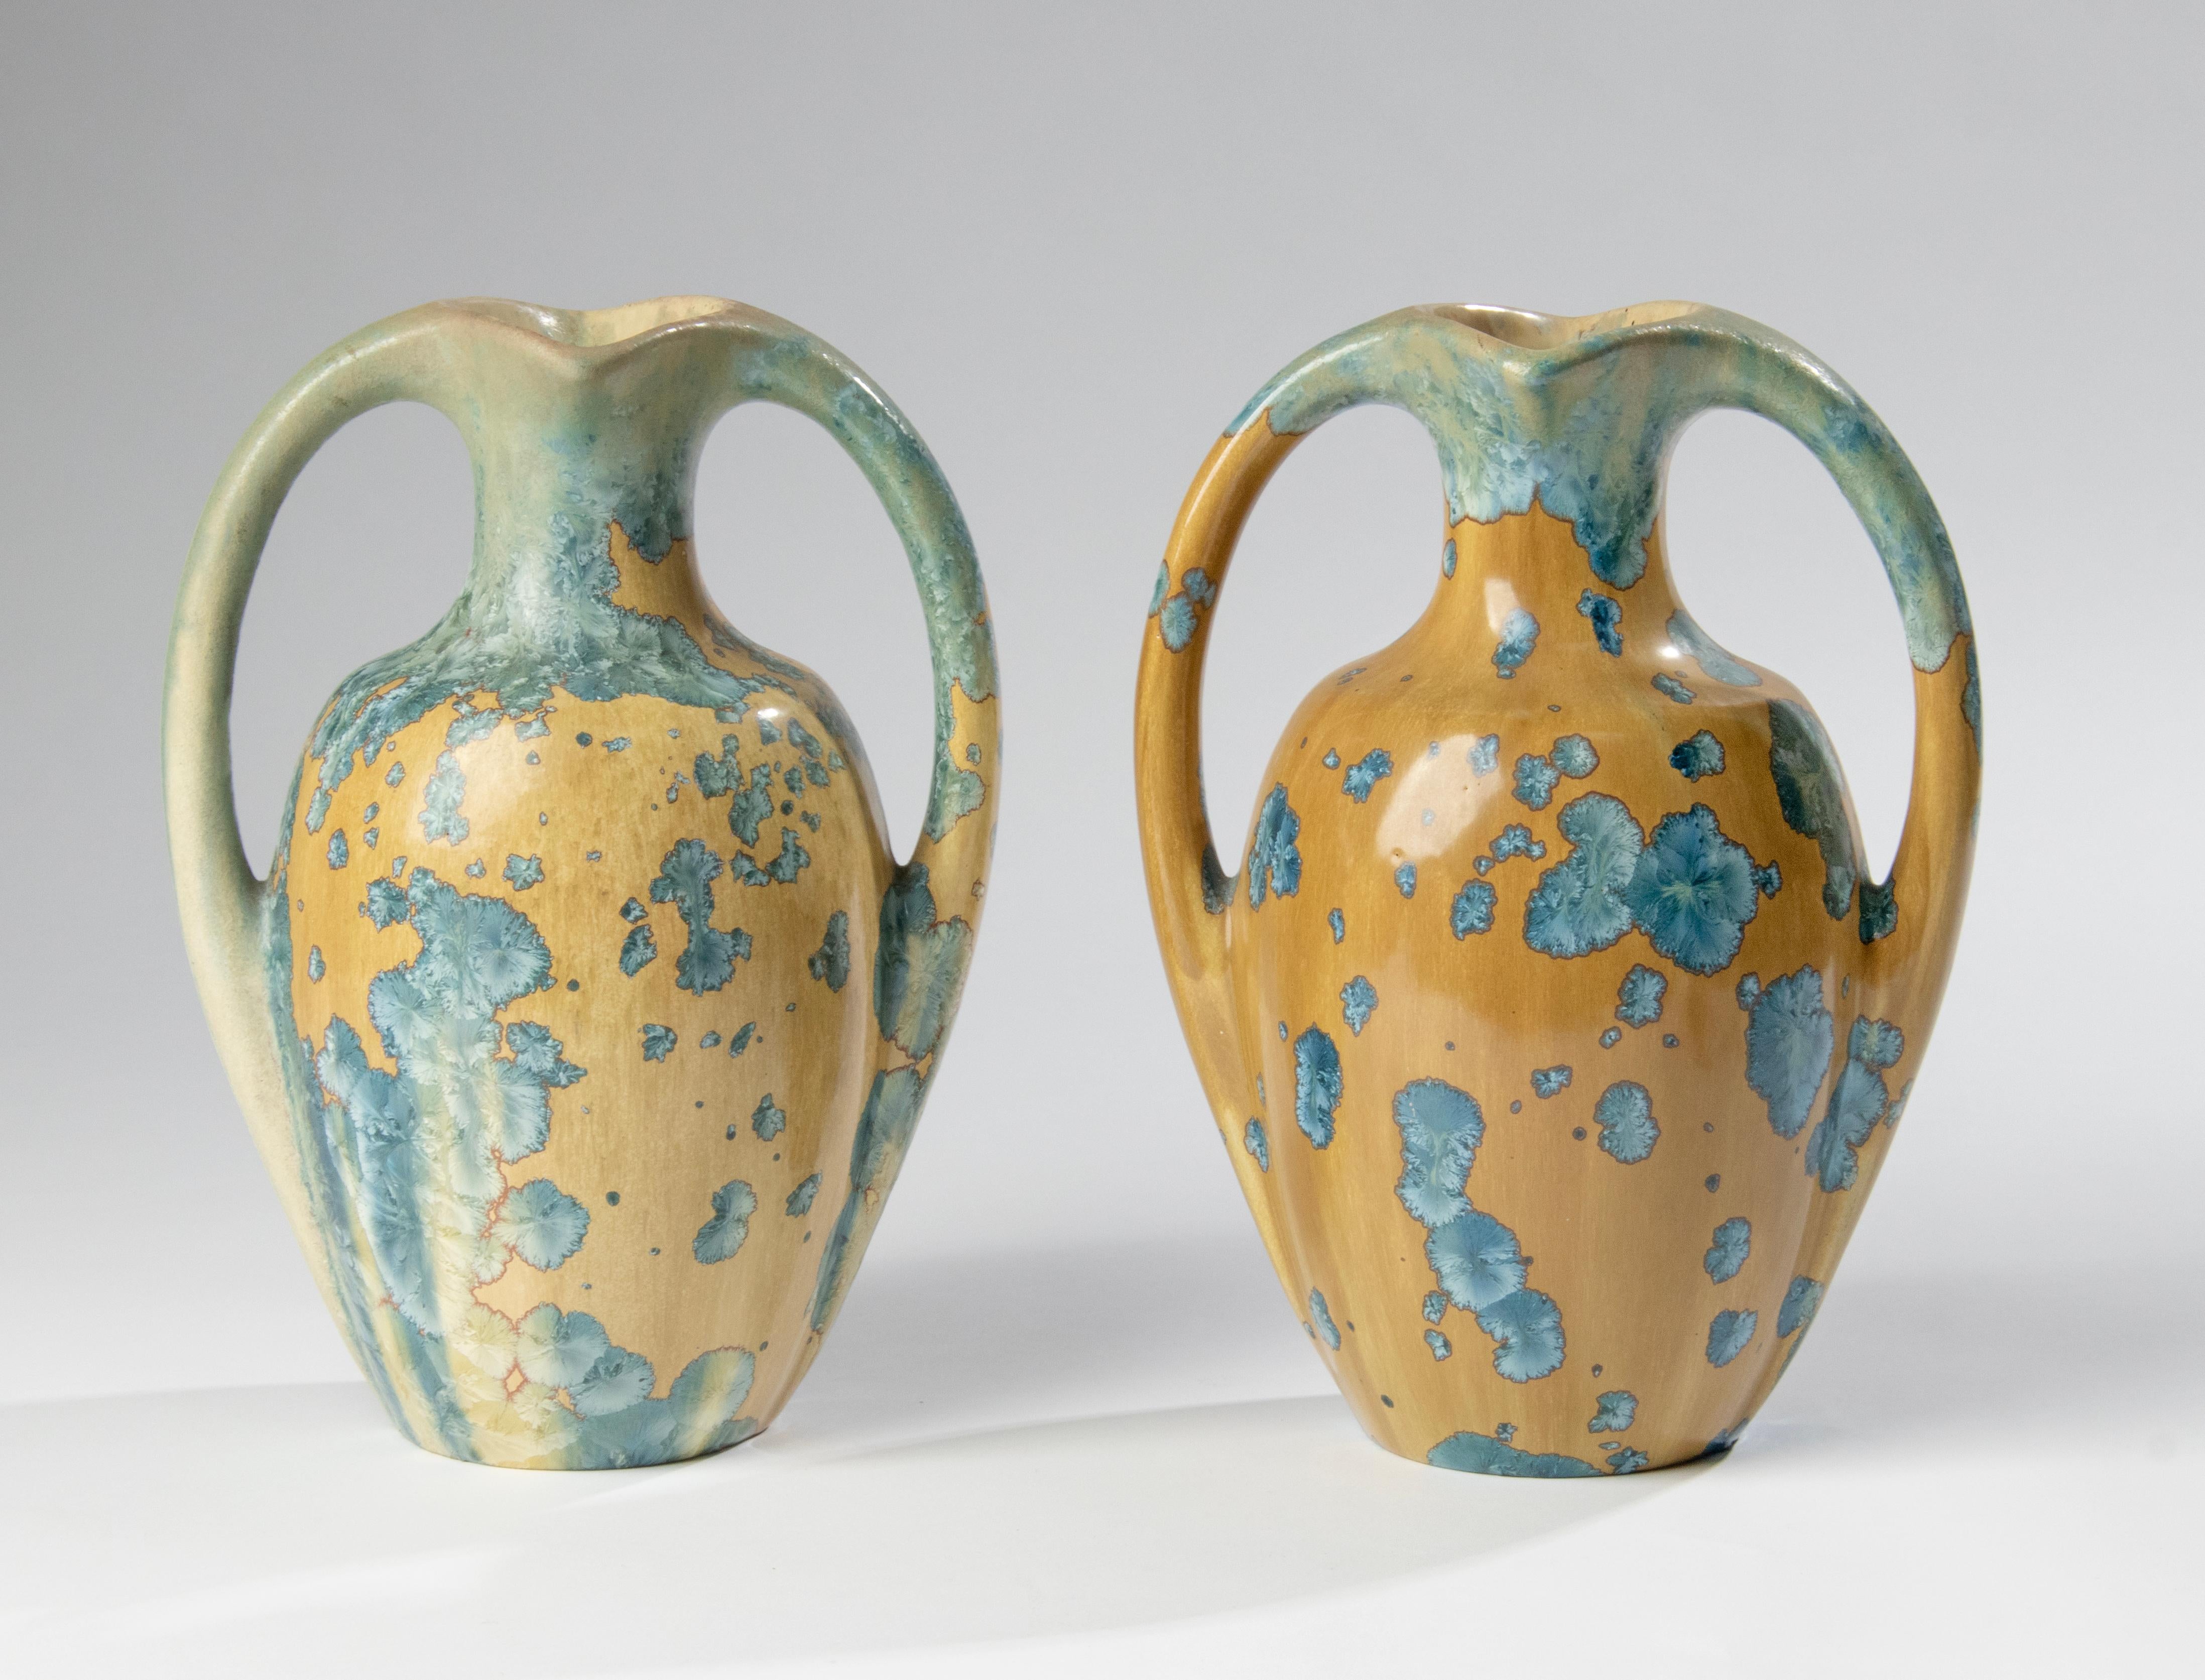 Ein schönes Paar von zwei keramischen Art Deco Vasen von La Faïencerie Héraldique de Pierrefonds Pottery of France. Die Vasen haben zwei geschwungene Henkel und sind mit einer goldbraunen Glasur mit leuchtend blauen kristallinen Clustern verziert,